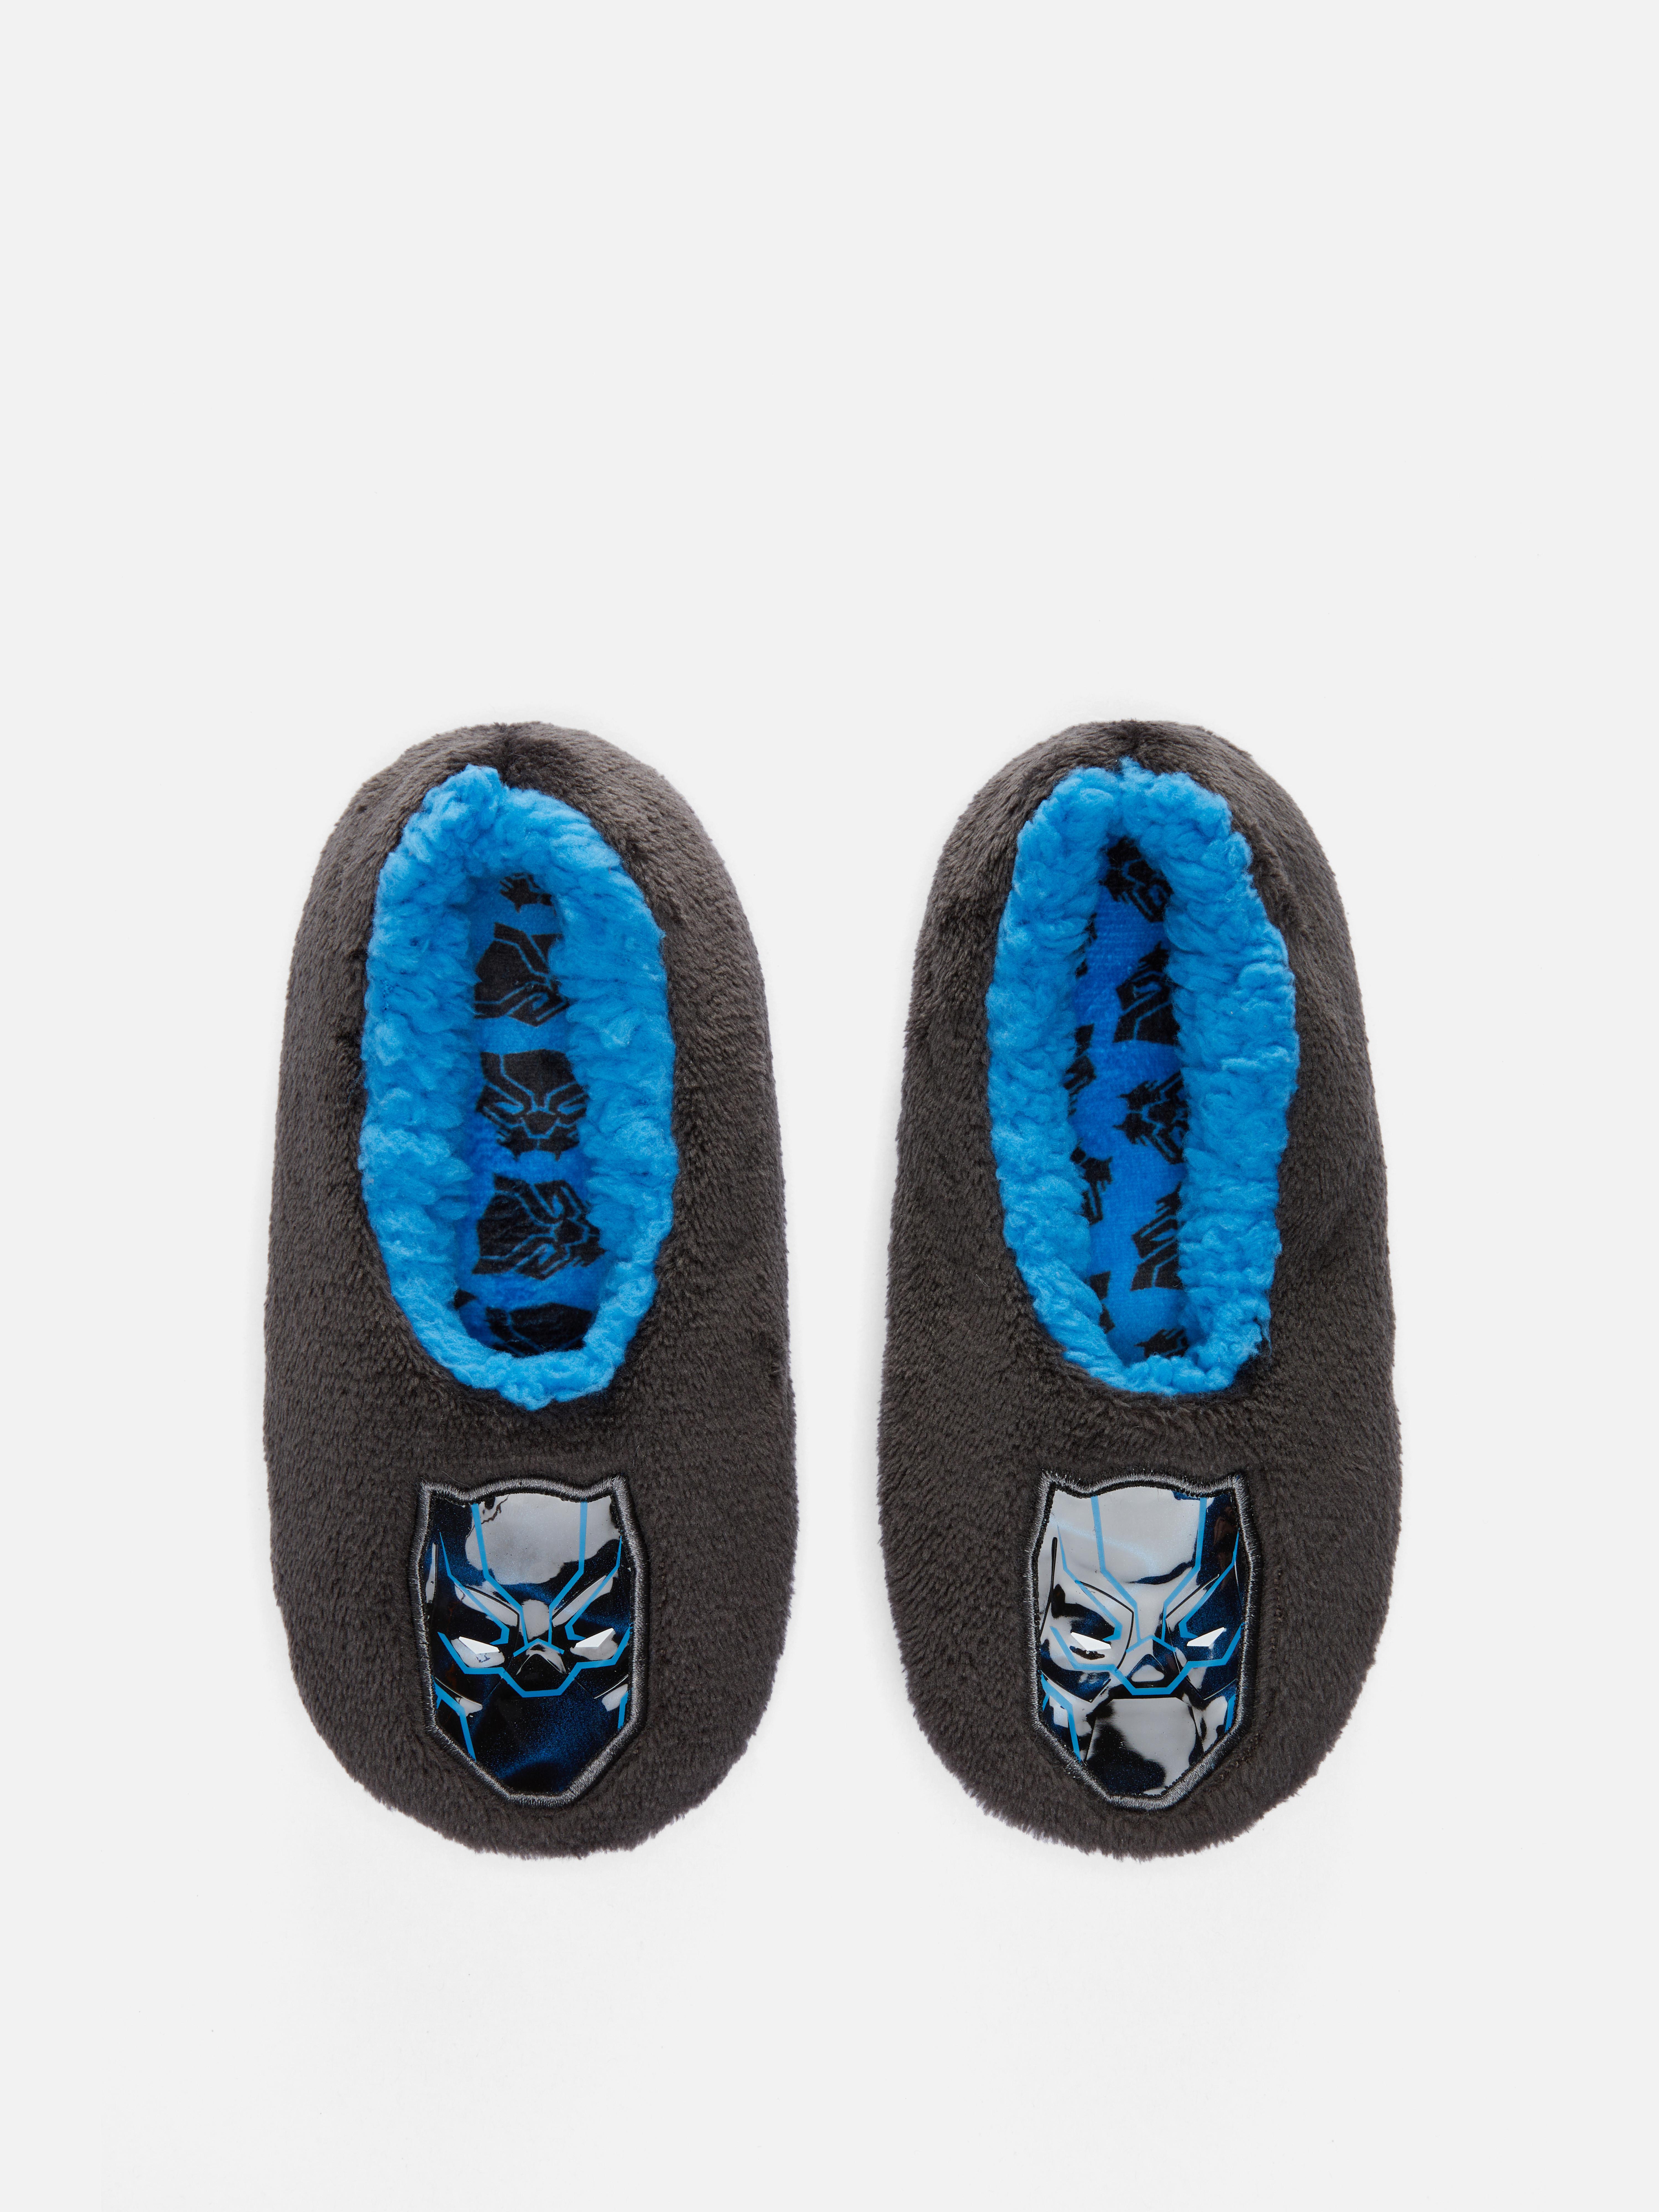 Marvel Black Panther Slipper Socks